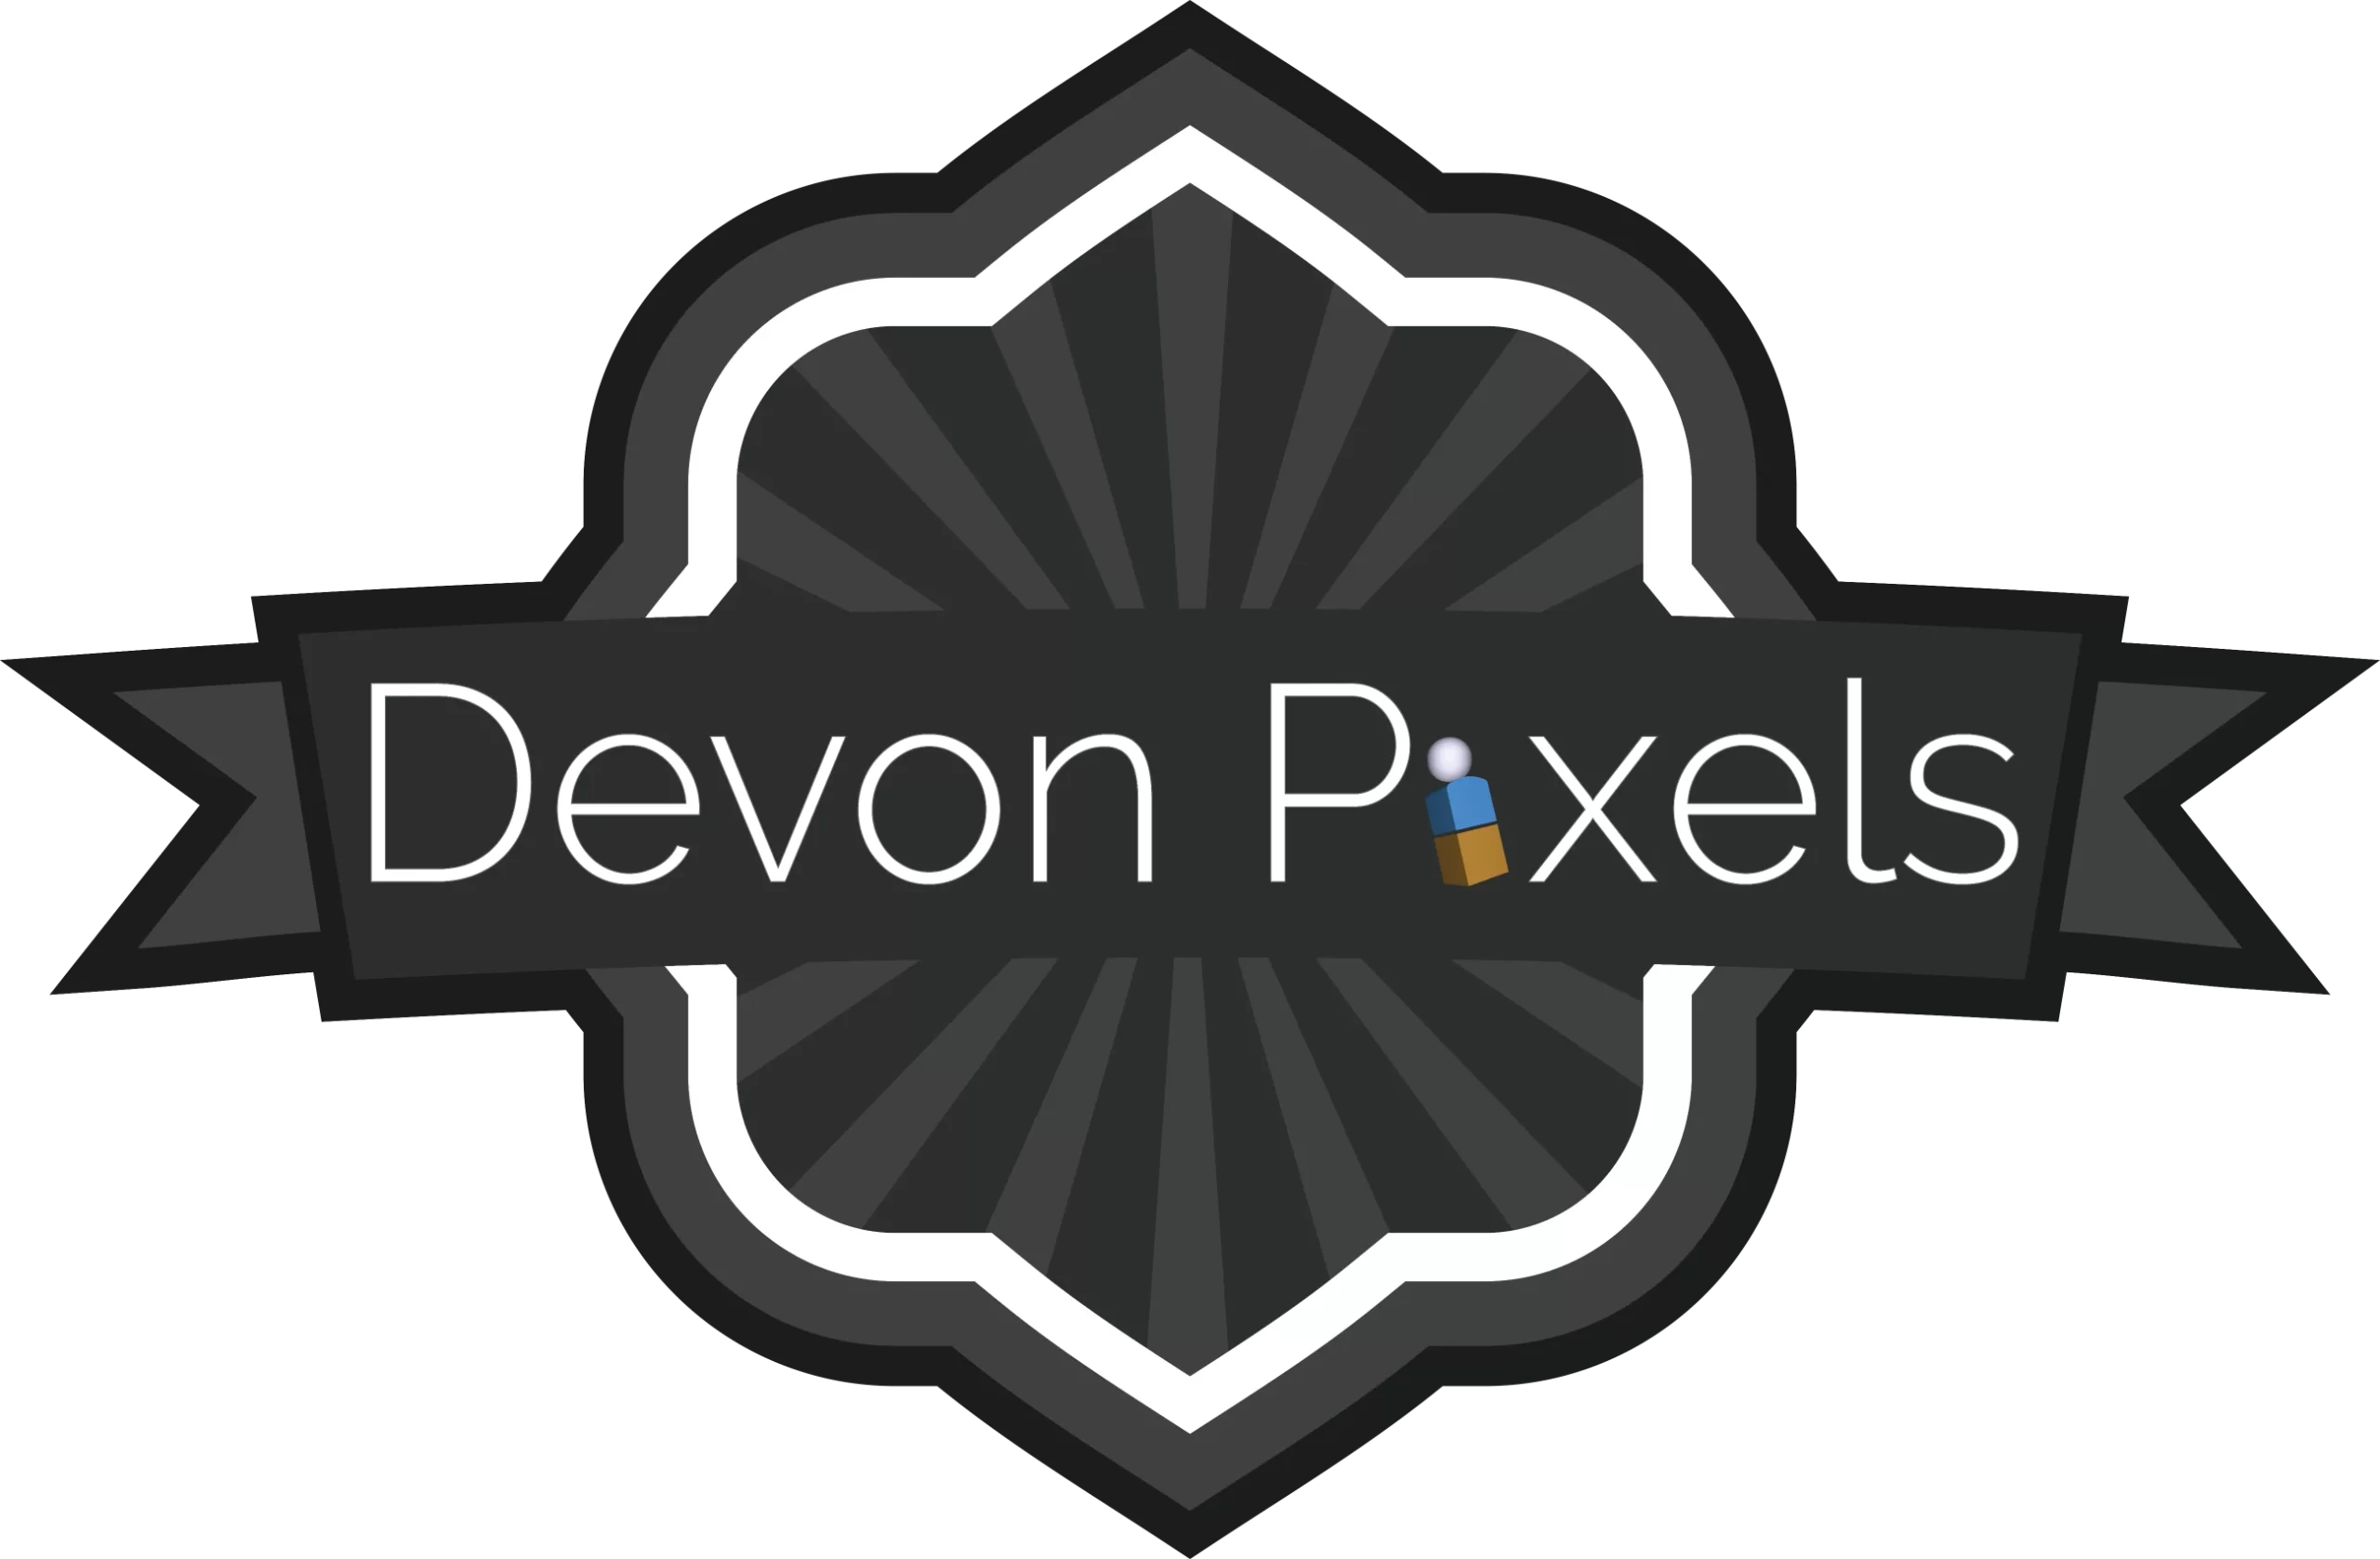 Devon Pixels